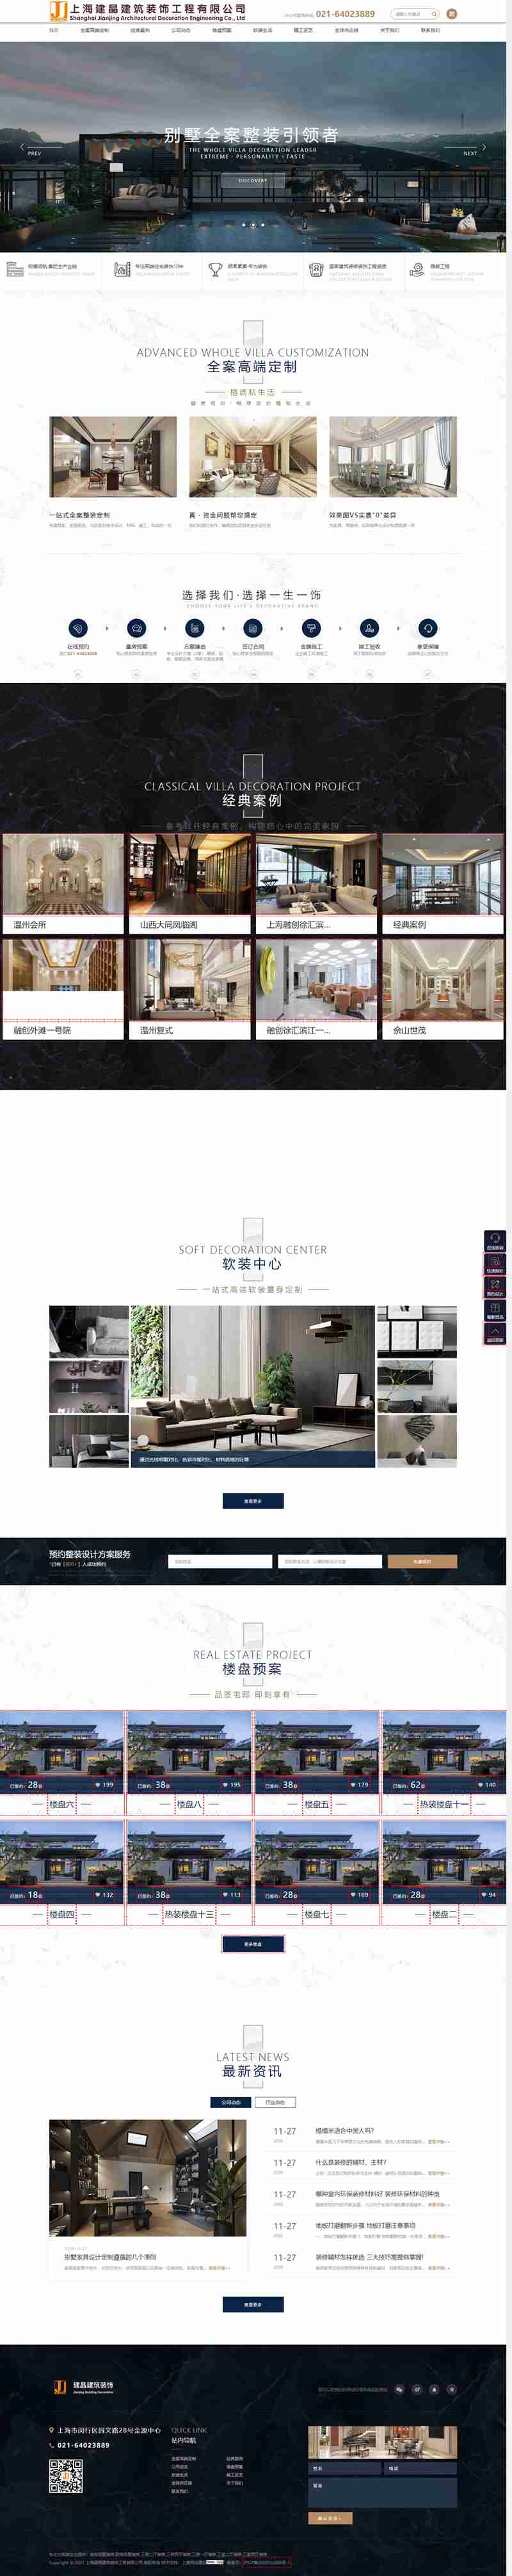 上海建晶建筑装饰工程有限公司网站制作效果.jpg